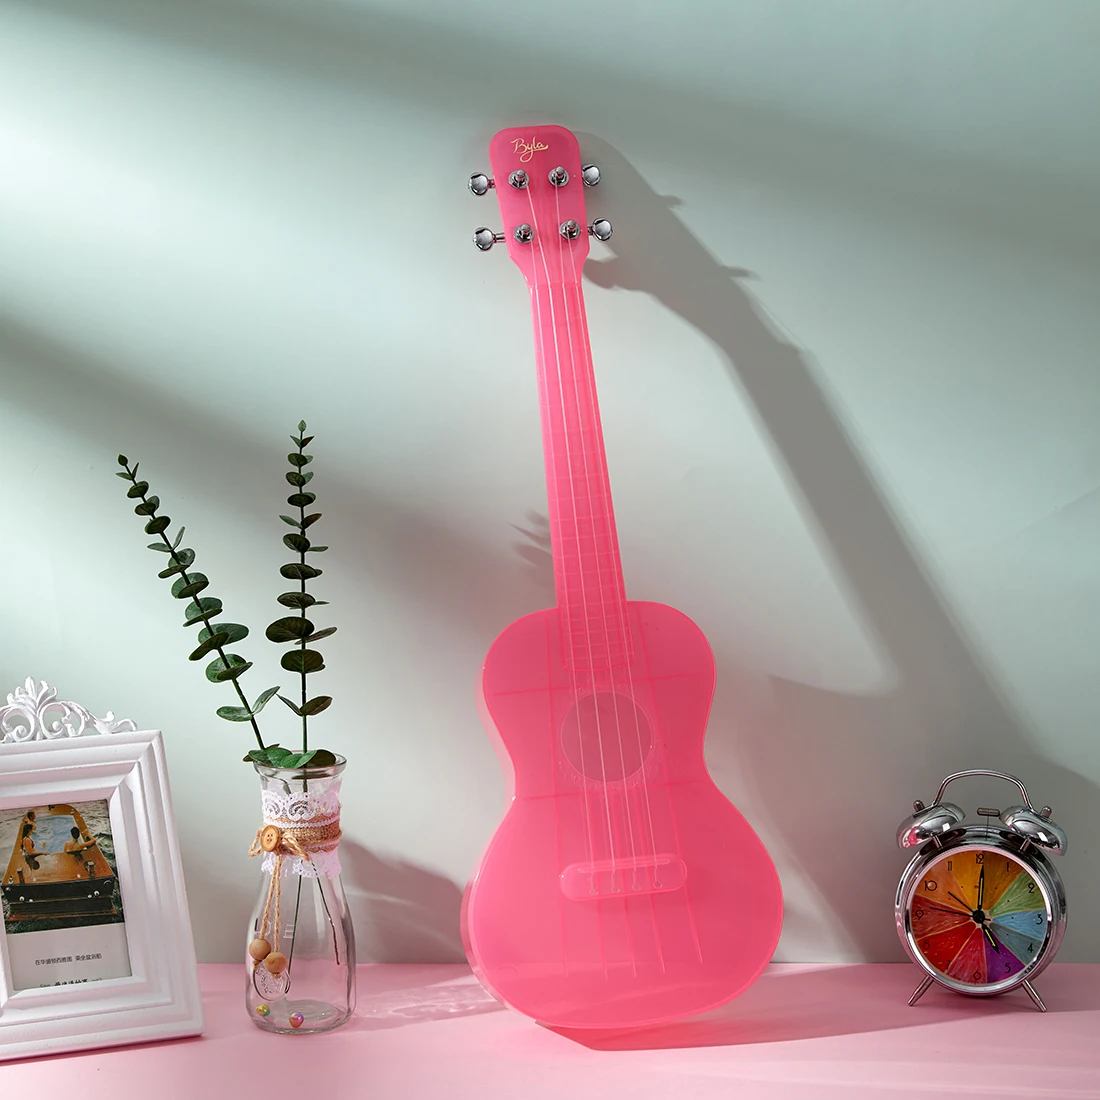 23 дюйма прозрачные акриловые миниатюрная гитара укулеле-4-струн гитара Музыкальные Инструменты Kit в рождественском стиле миниатюрная гитара укулеле-подарок-розовый